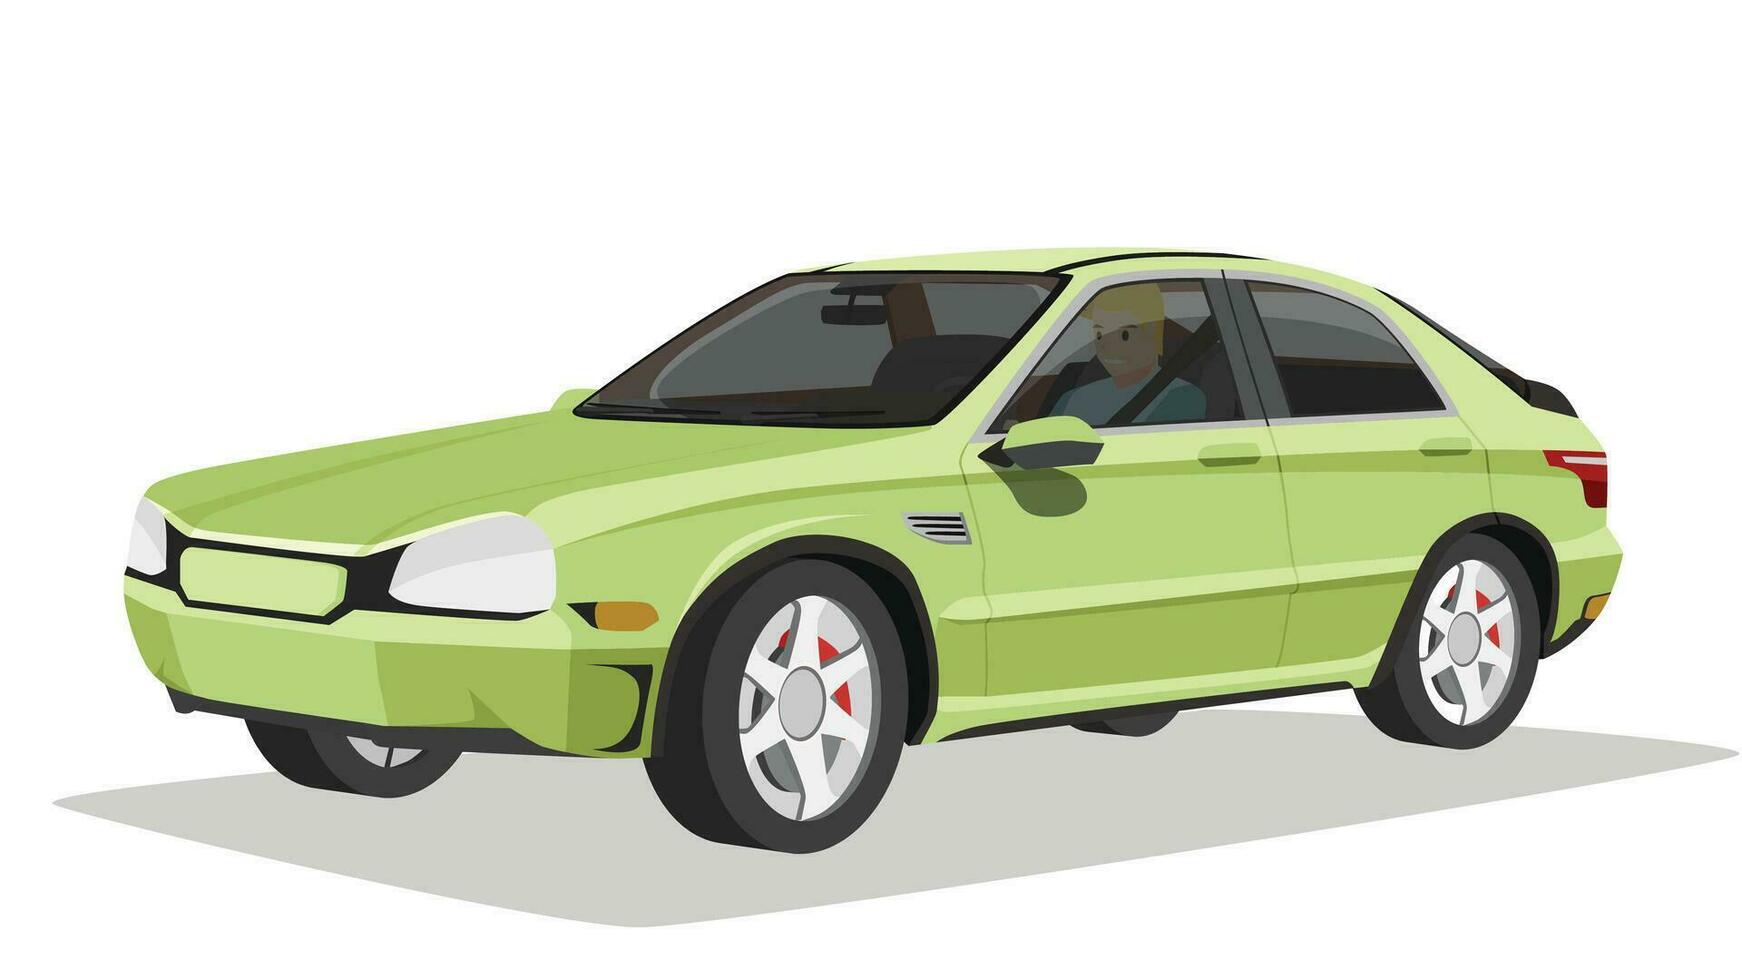 concept vector illustratie van gedetailleerd perspectief visie van een vlak groen auto. bestuurder mand rit auto. met schaduw van auto. kan visie interieur van auto. geïsoleerd wit achtergrond.